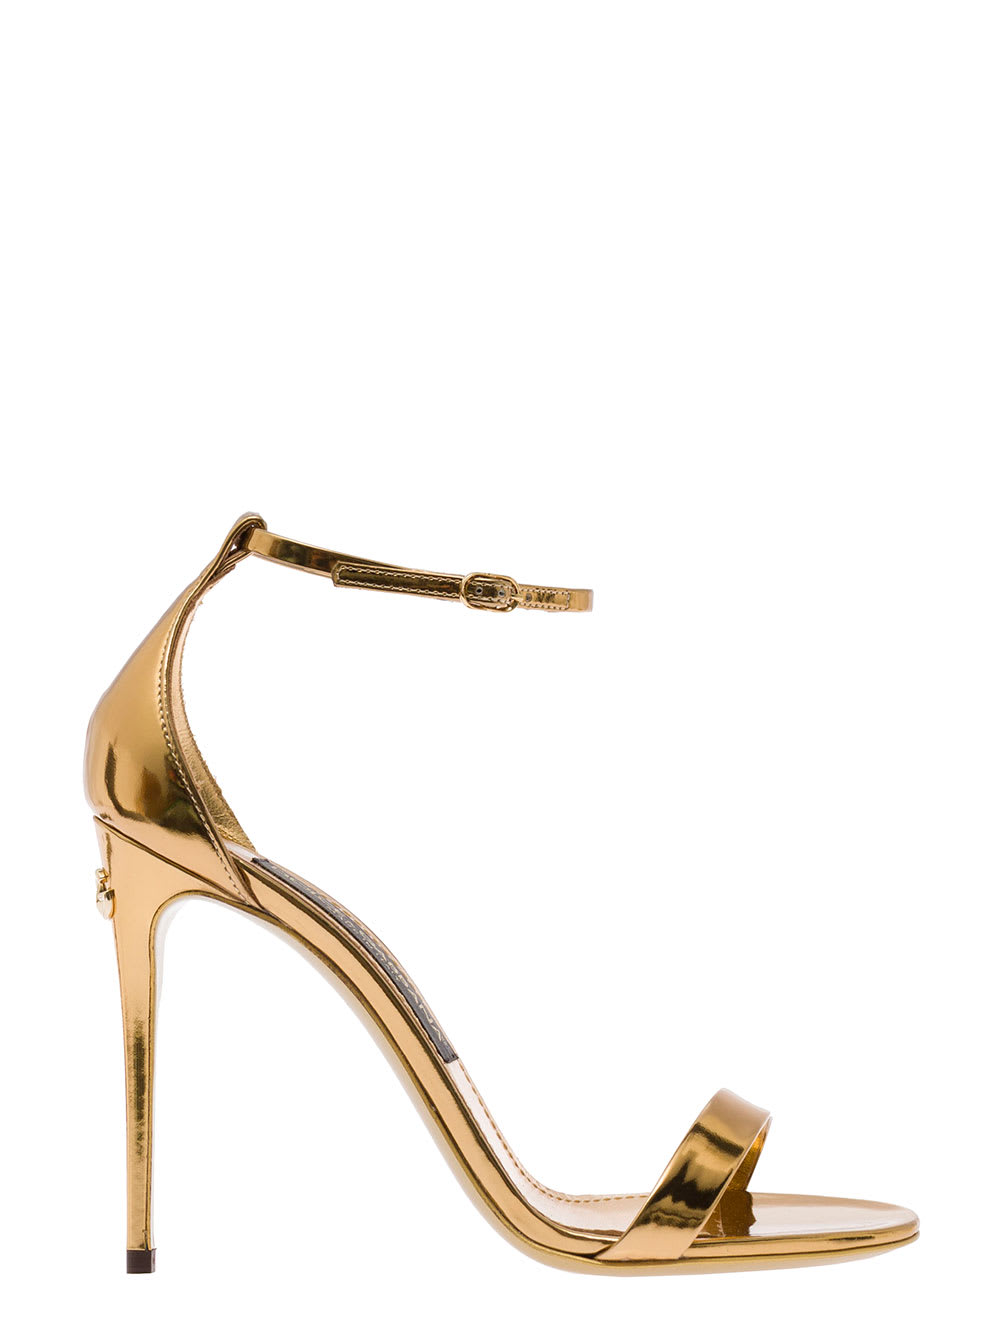 Dolce & Gabbana Simple 105 Heel Sandal